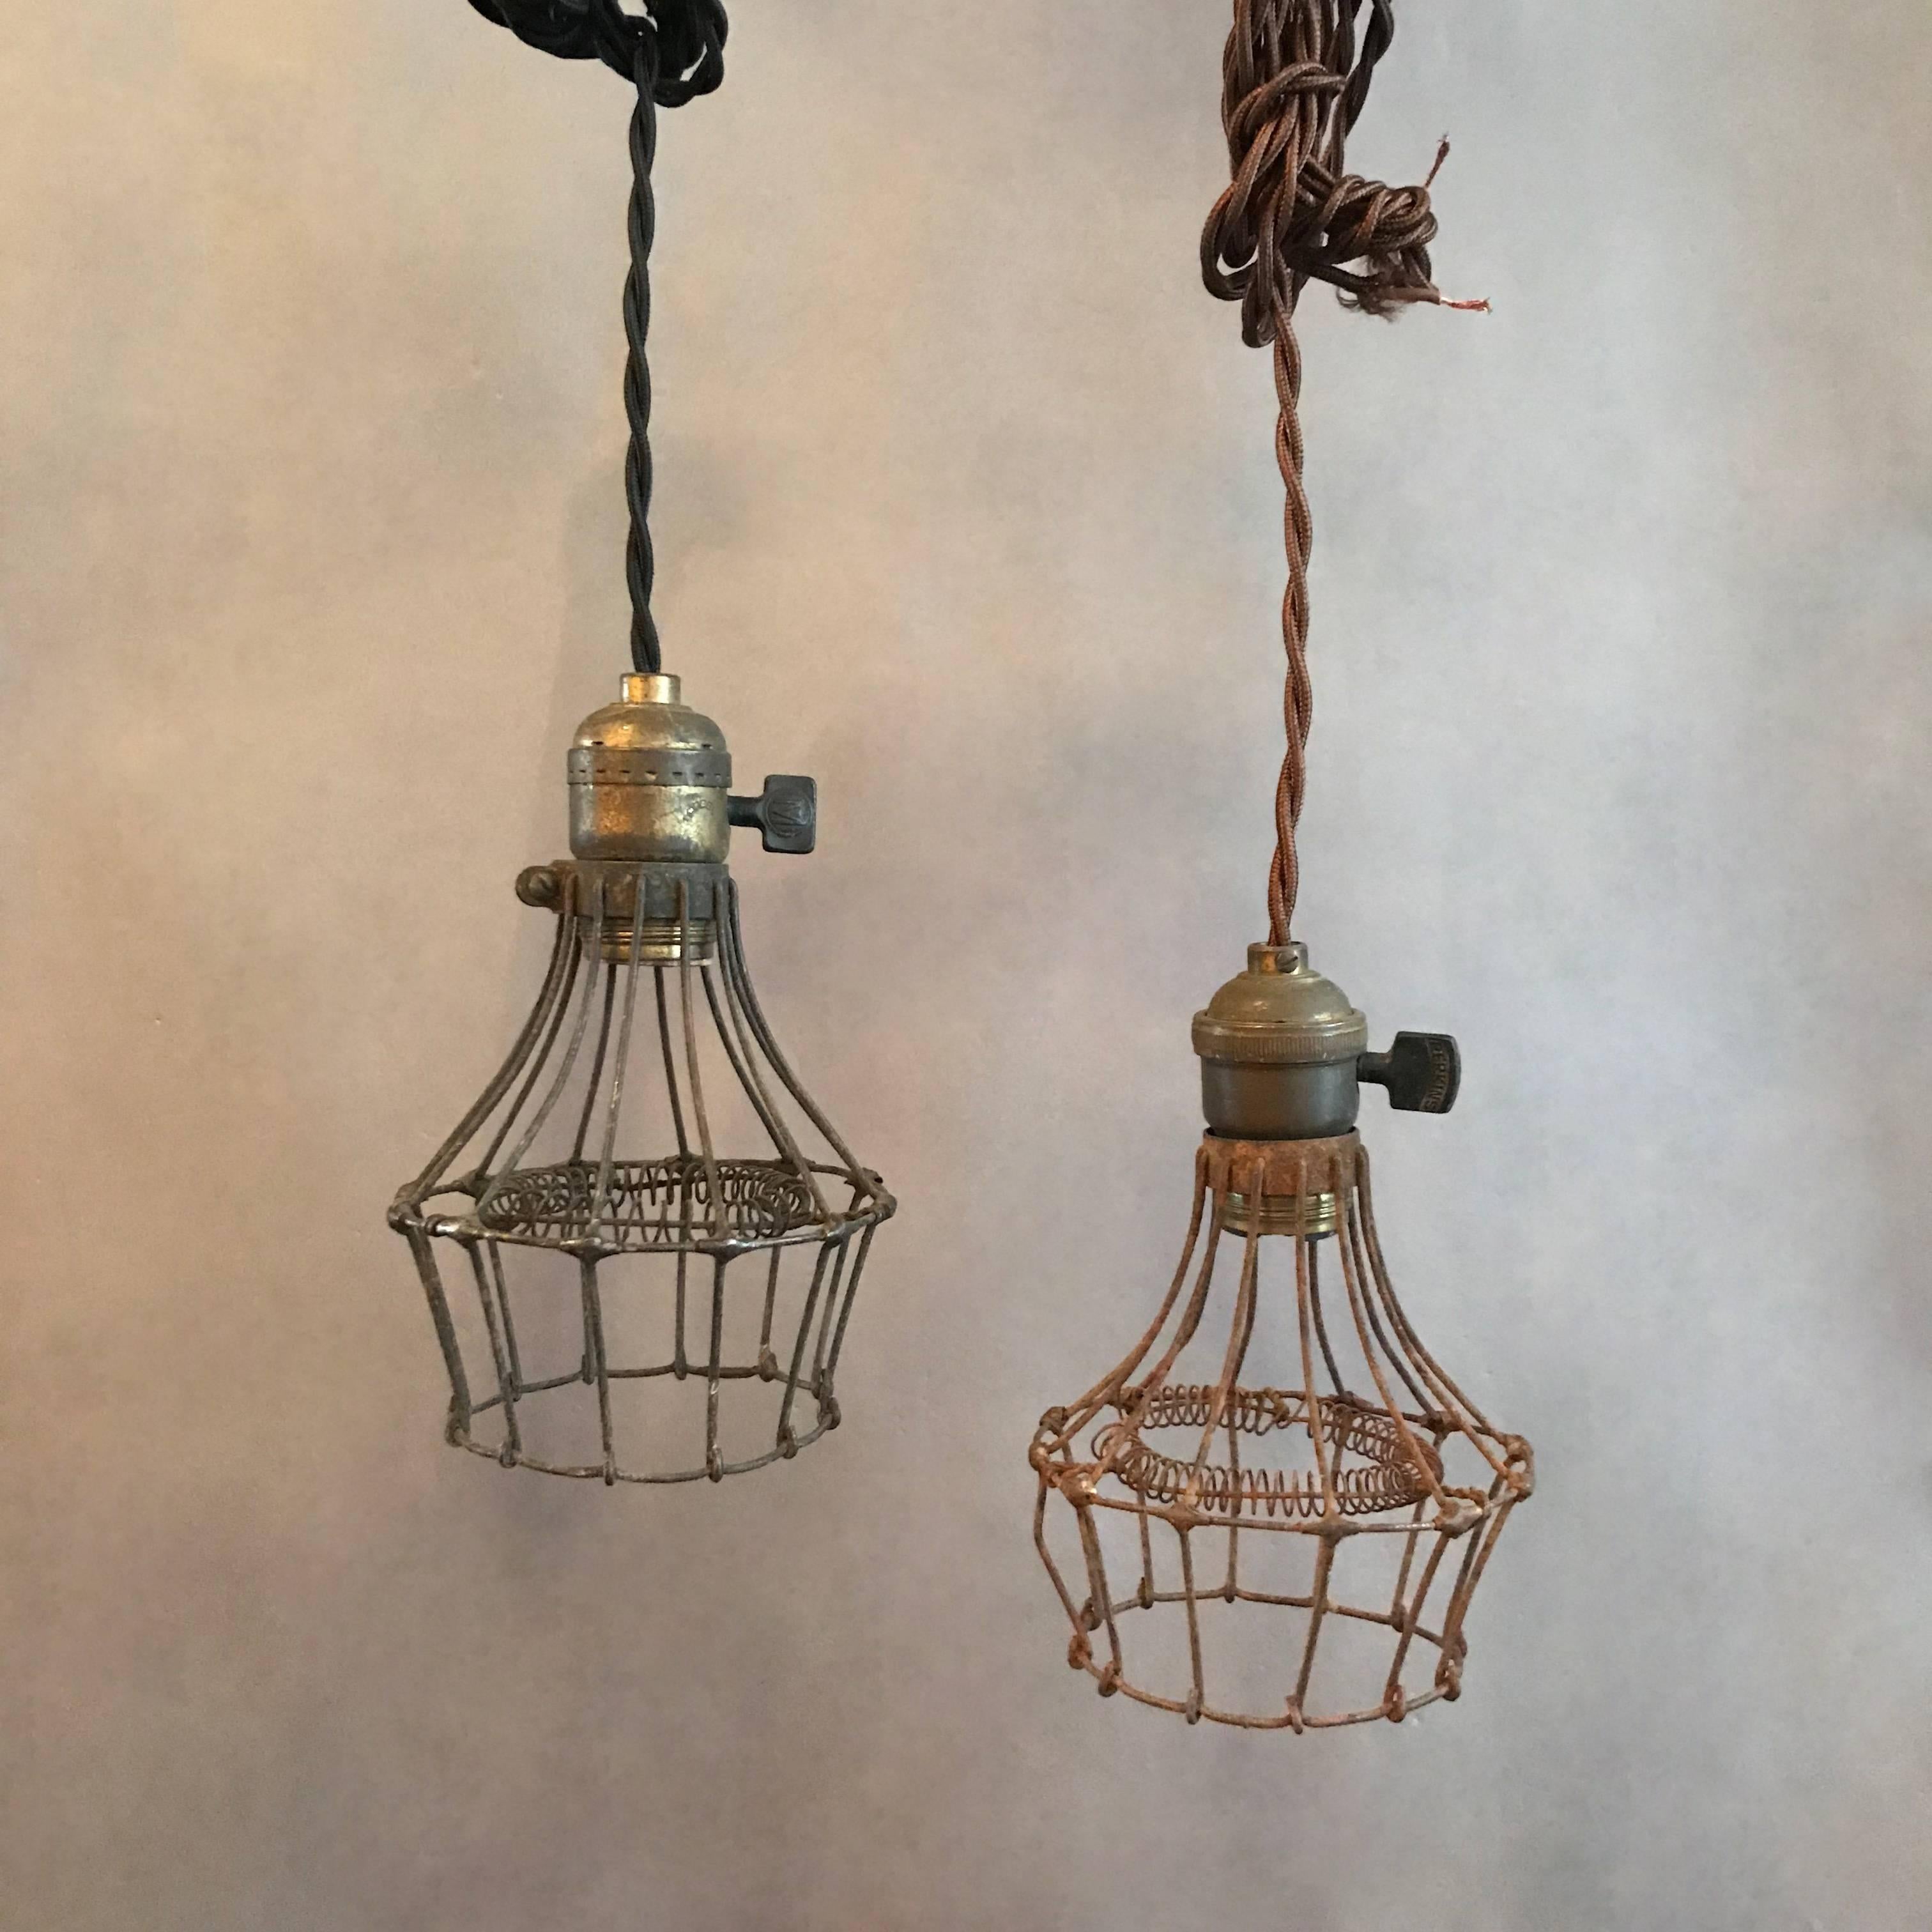 Ungewöhnliche und seltene Käfig-Pendelleuchten aus den 1920er Jahren mit Stahldrahtkäfigen, die innen mit einer Glühbirnenspirale geschützt sind, und Messingarmaturen mit Schaltern. Diese Lichter sind neu verdrahtet, um bis zu einer